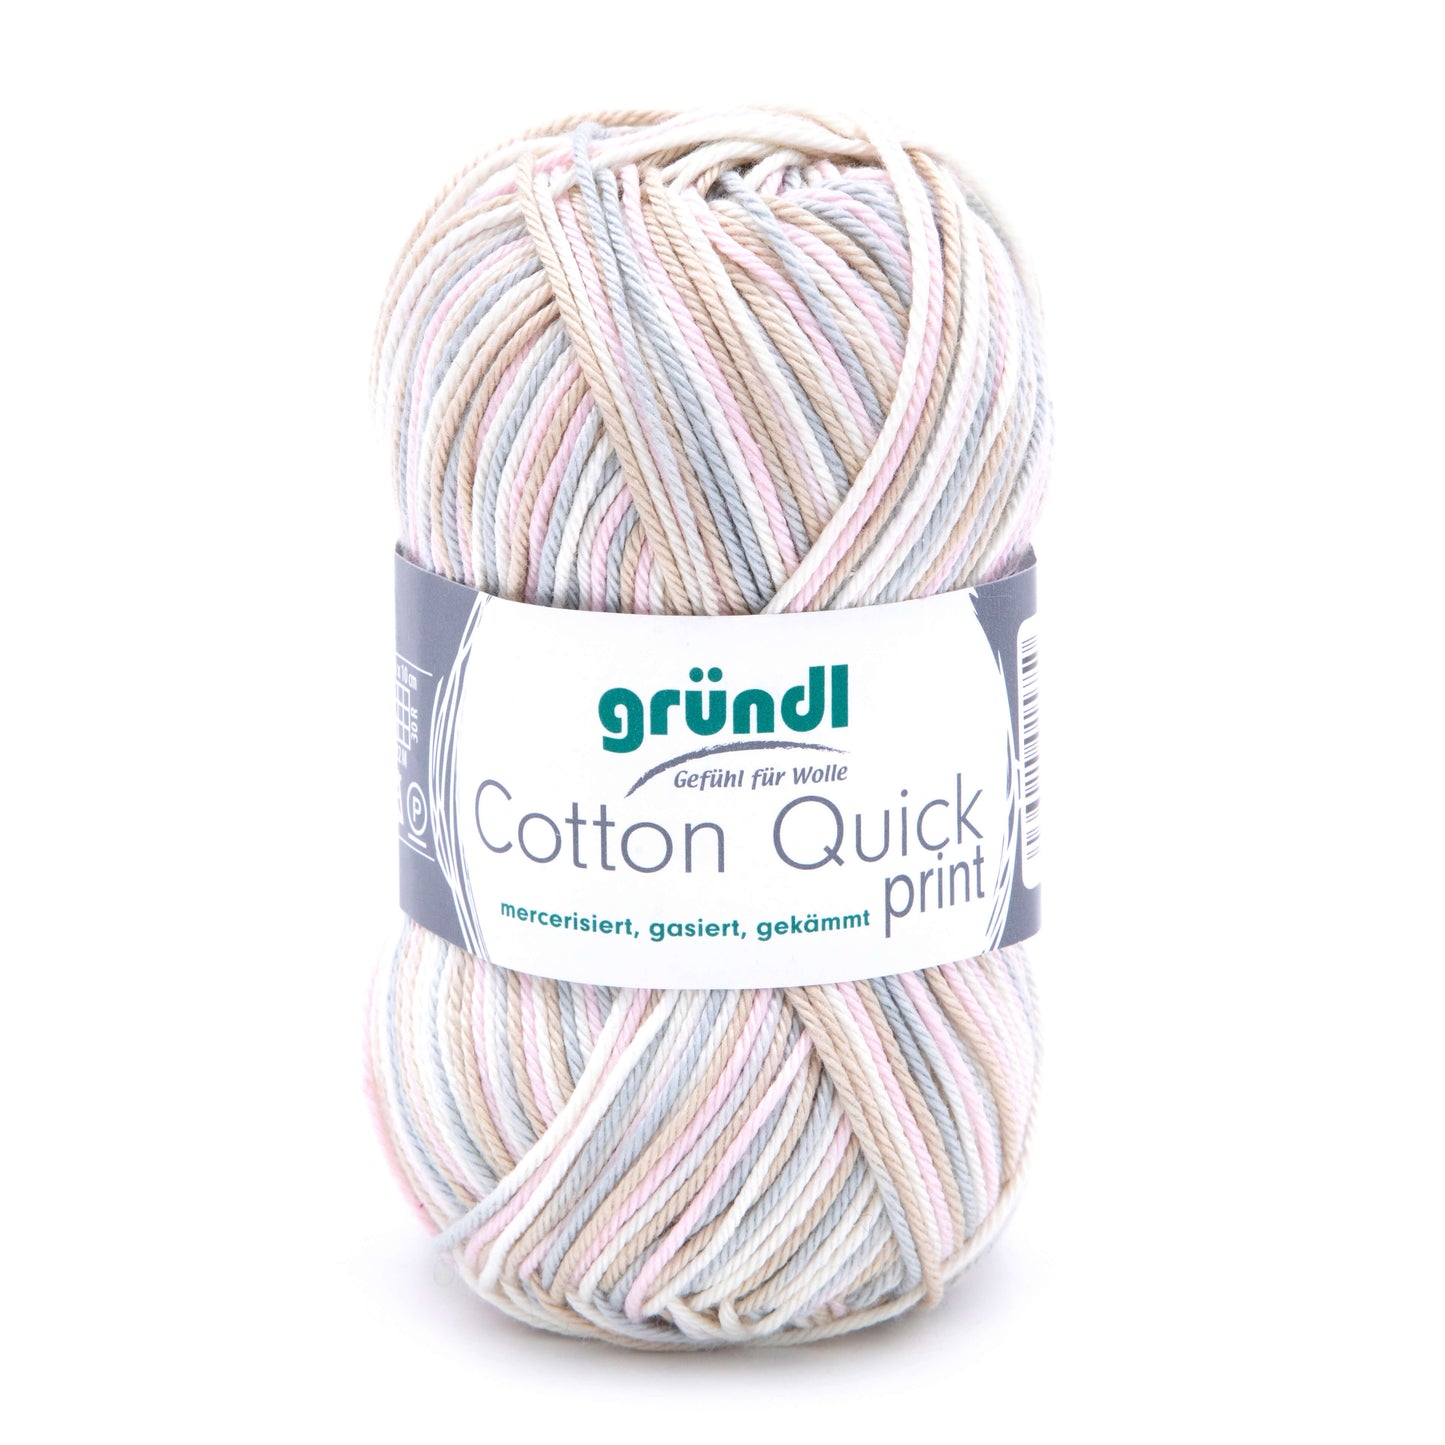 Gründl Cotton Quick print 100 % Baumwolle